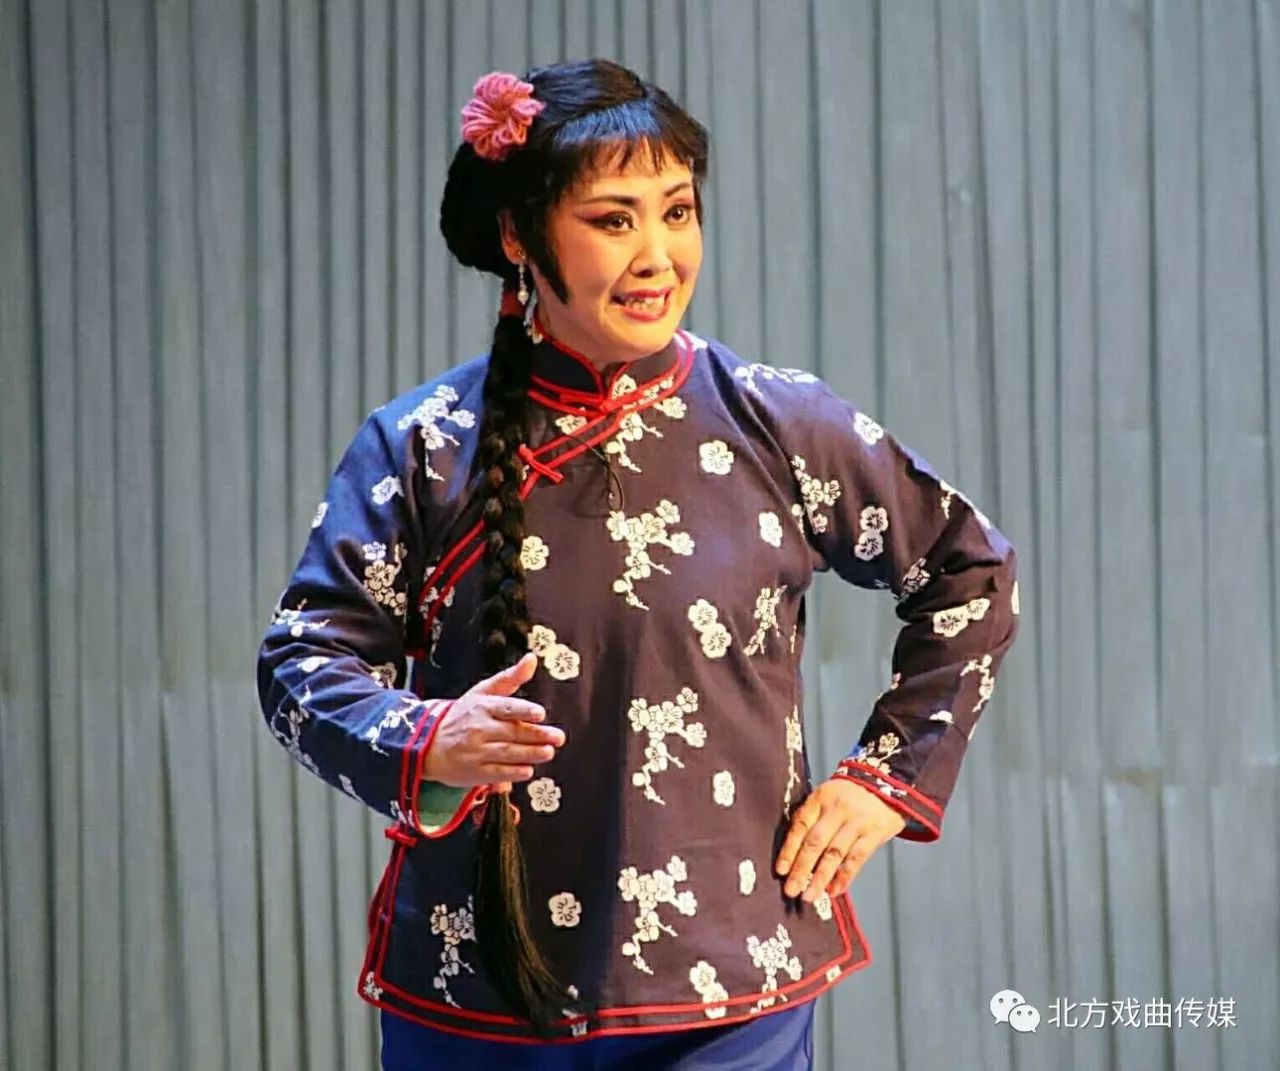 评剧表演艺术家徐金仙老师把杨三姐那泼辣,刚烈的性格表现的淋漓尽致!